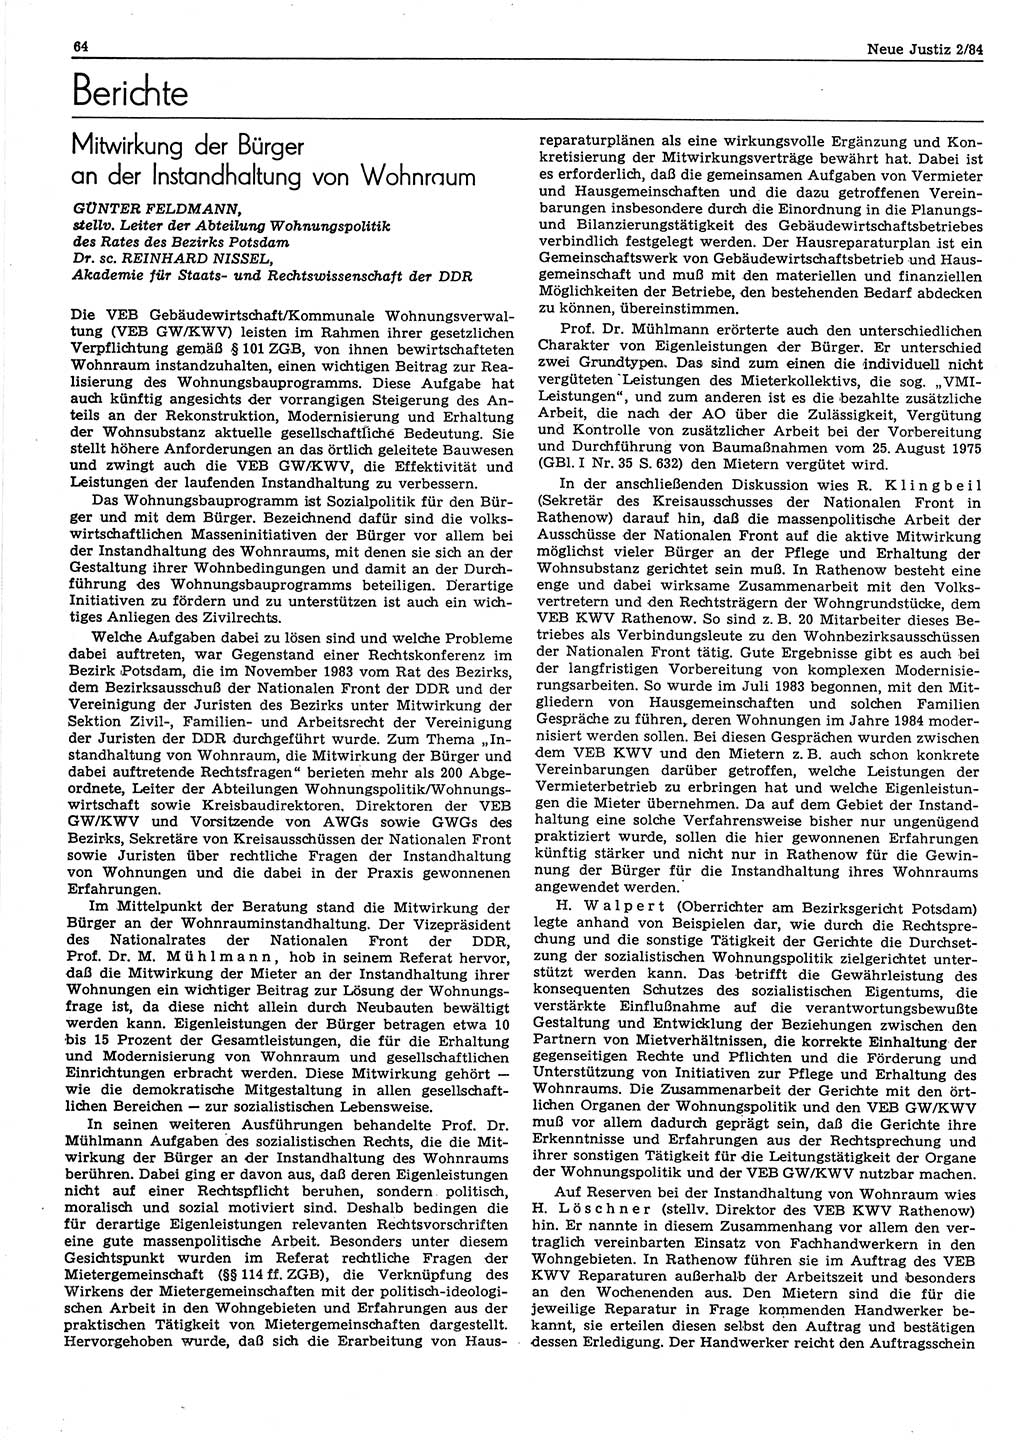 Neue Justiz (NJ), Zeitschrift für sozialistisches Recht und Gesetzlichkeit [Deutsche Demokratische Republik (DDR)], 38. Jahrgang 1984, Seite 64 (NJ DDR 1984, S. 64)